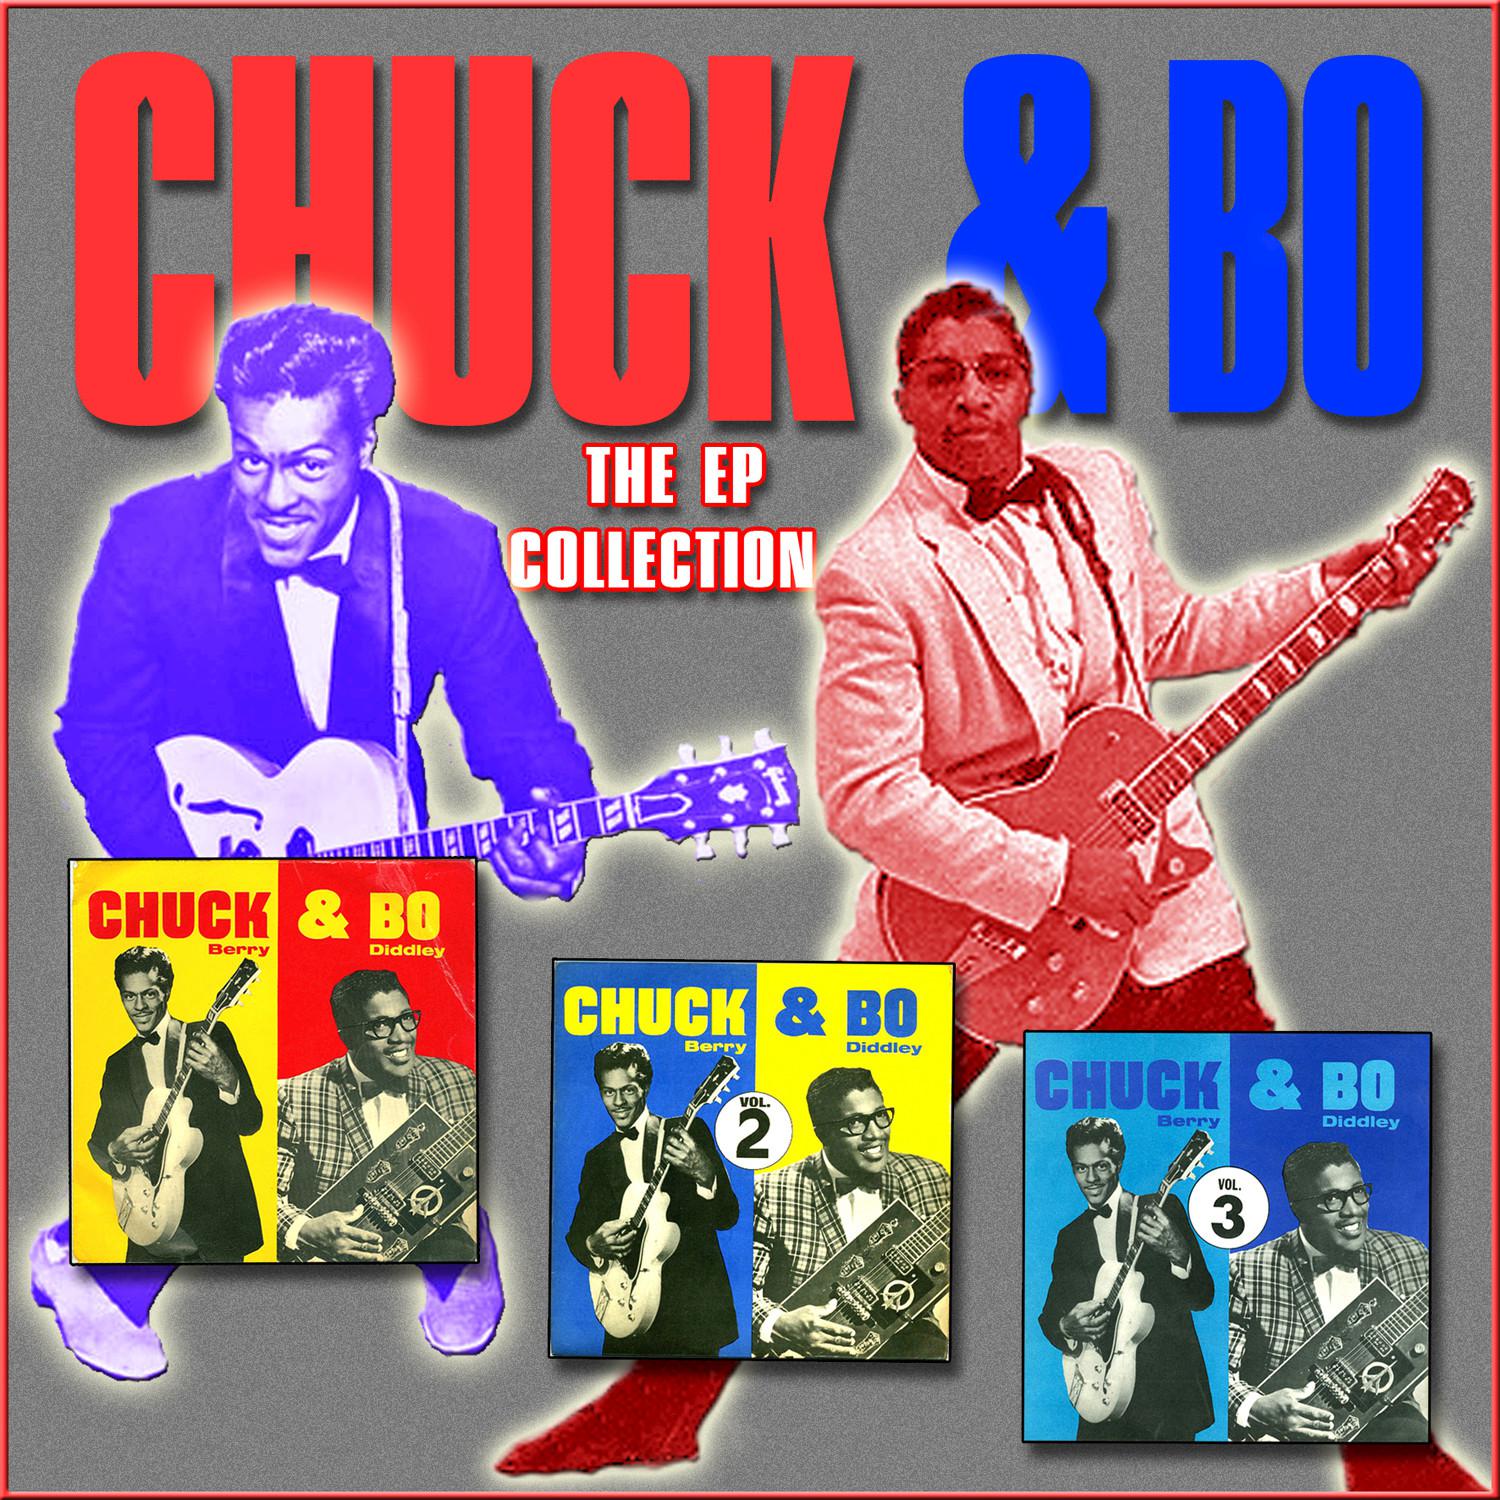 The Chuck & Bo EP Collection